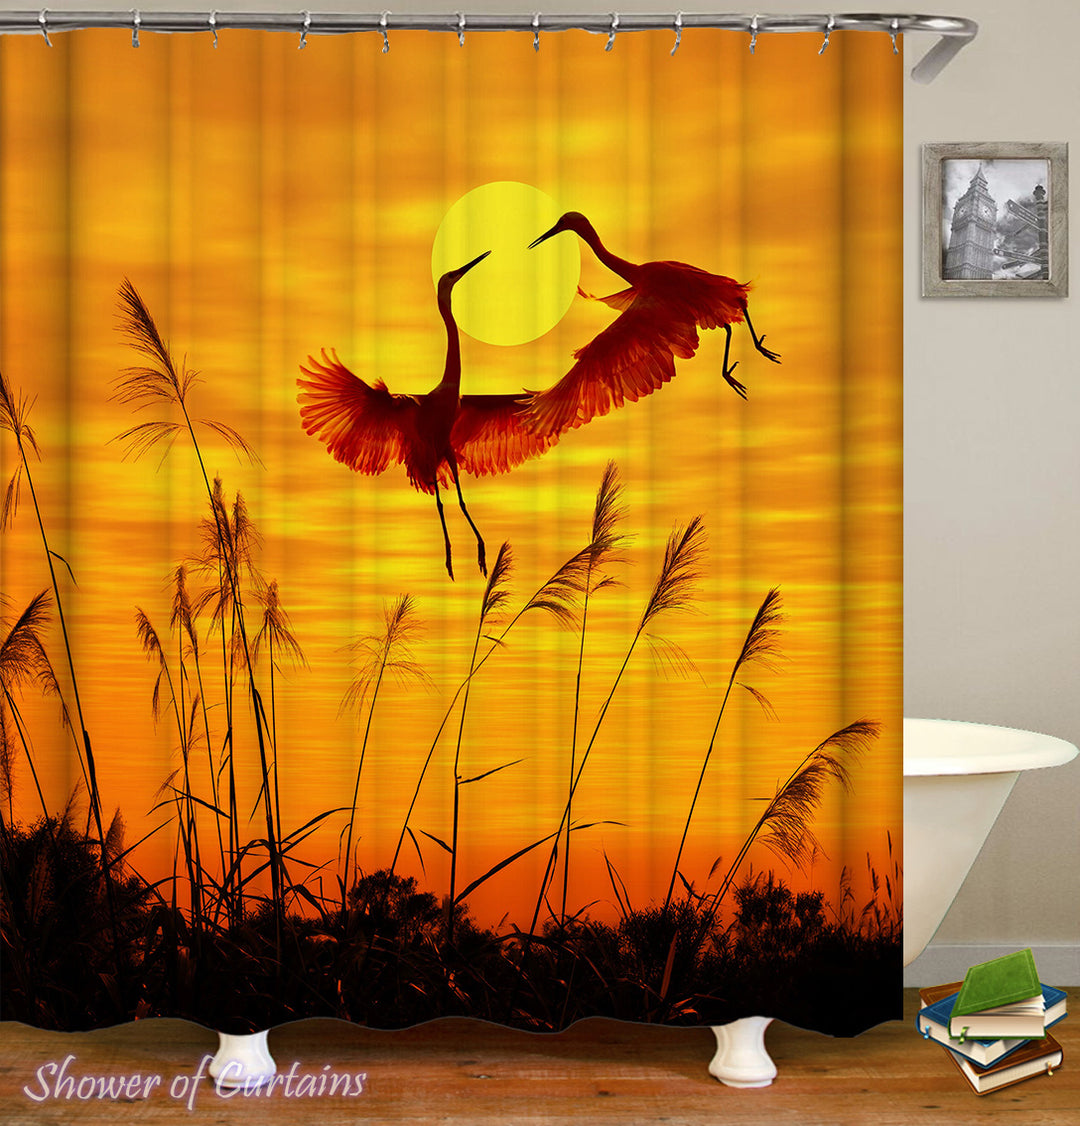 Bird Shower Curtain - Sunset Flying Storks